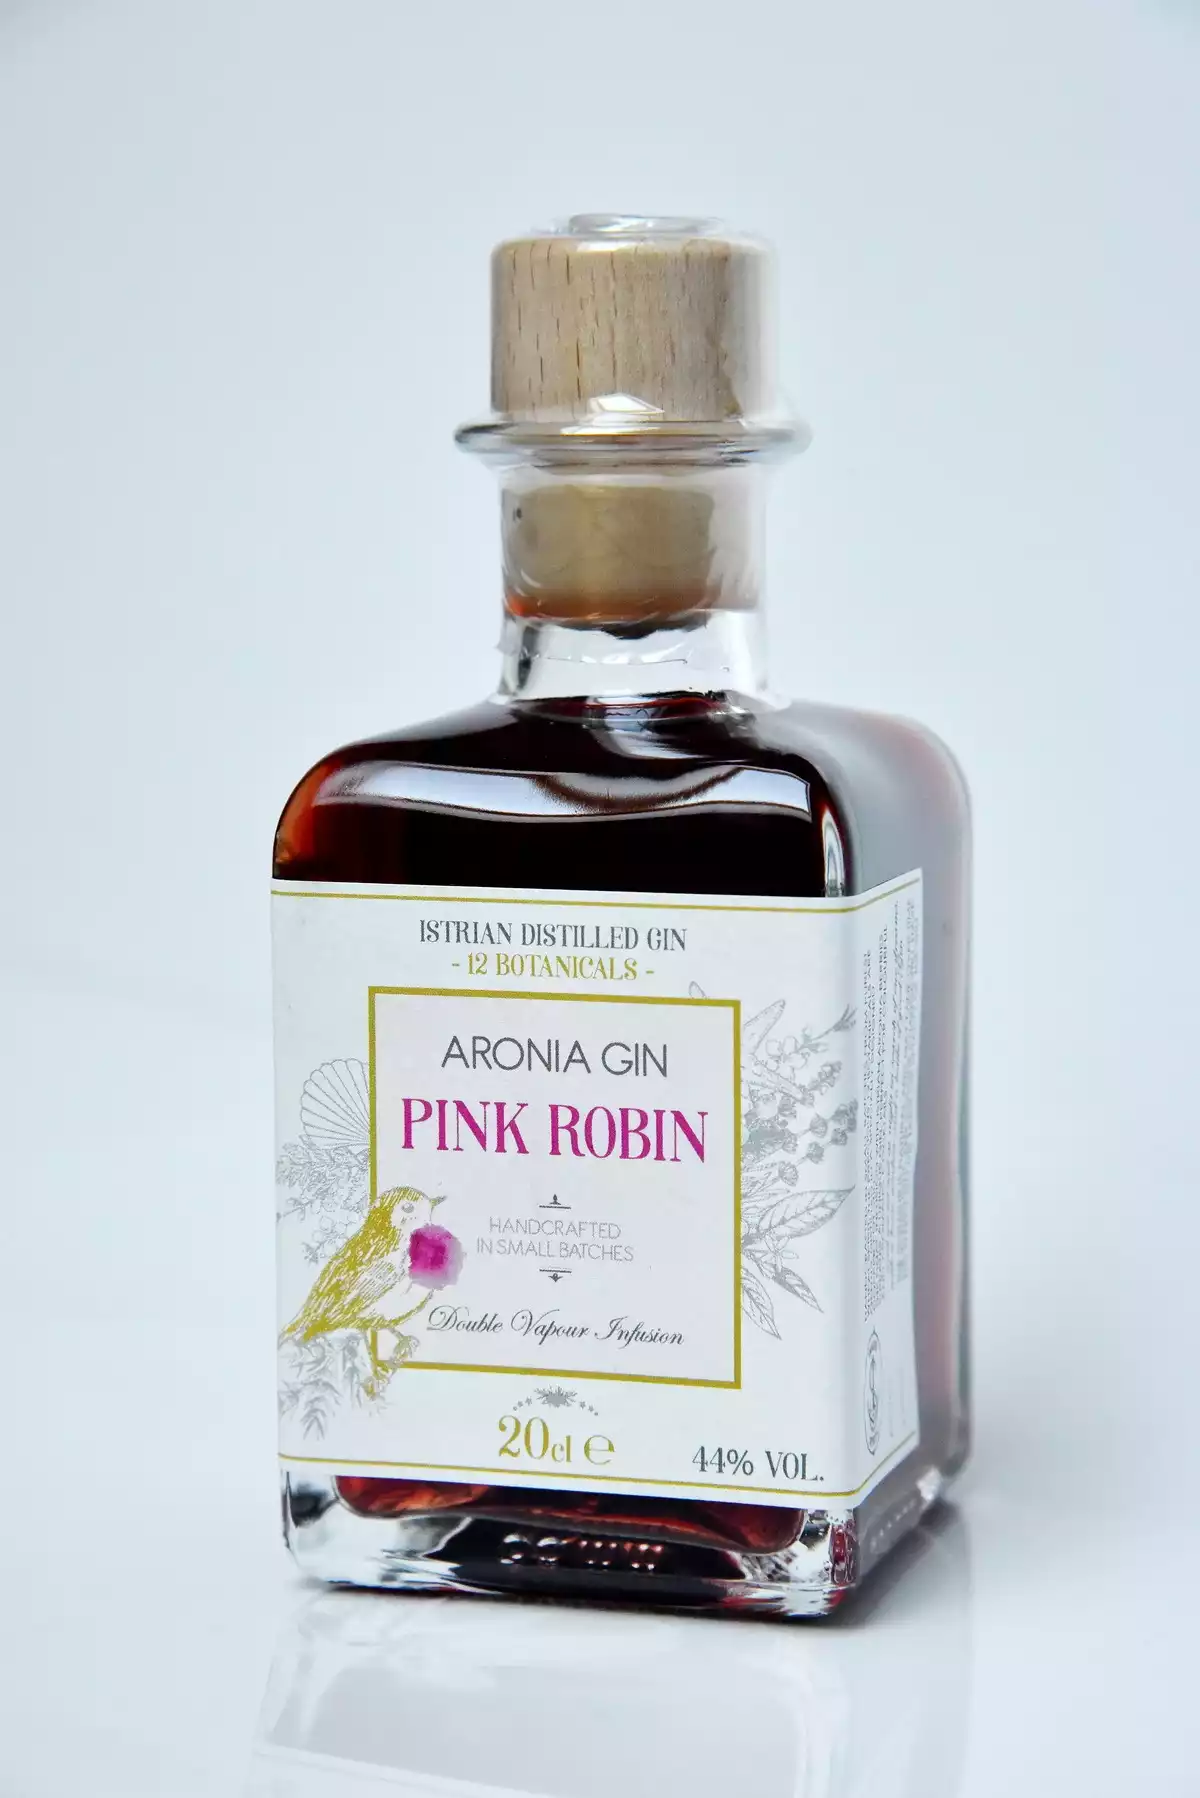 Pink Robin Aronia Gin